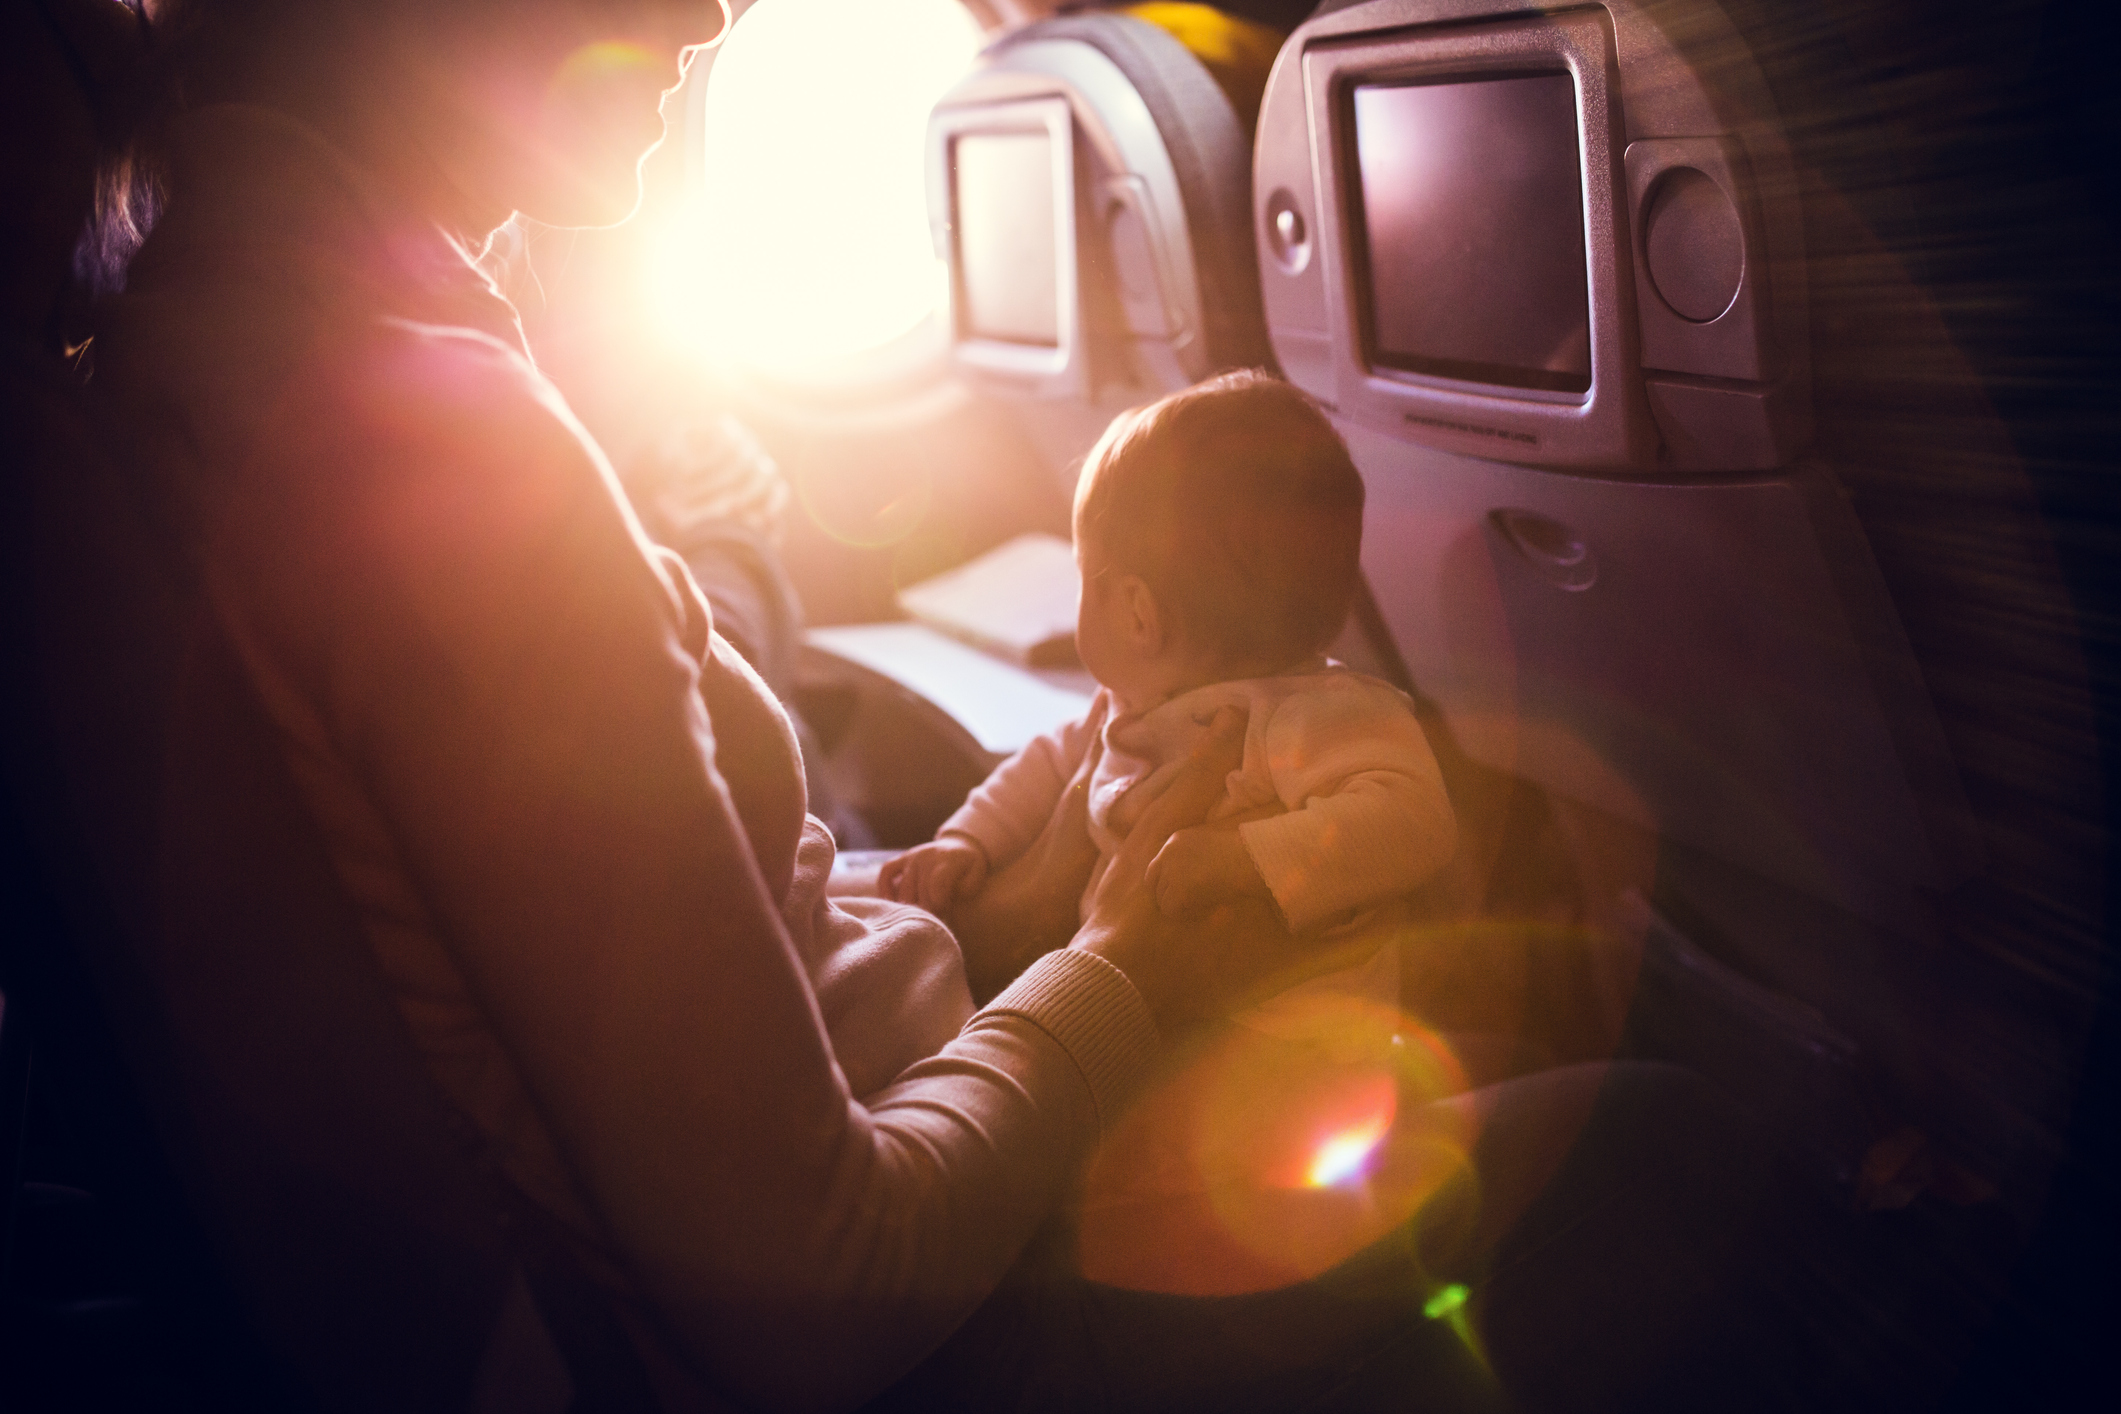 Mutter mit Baby im Flugzeug